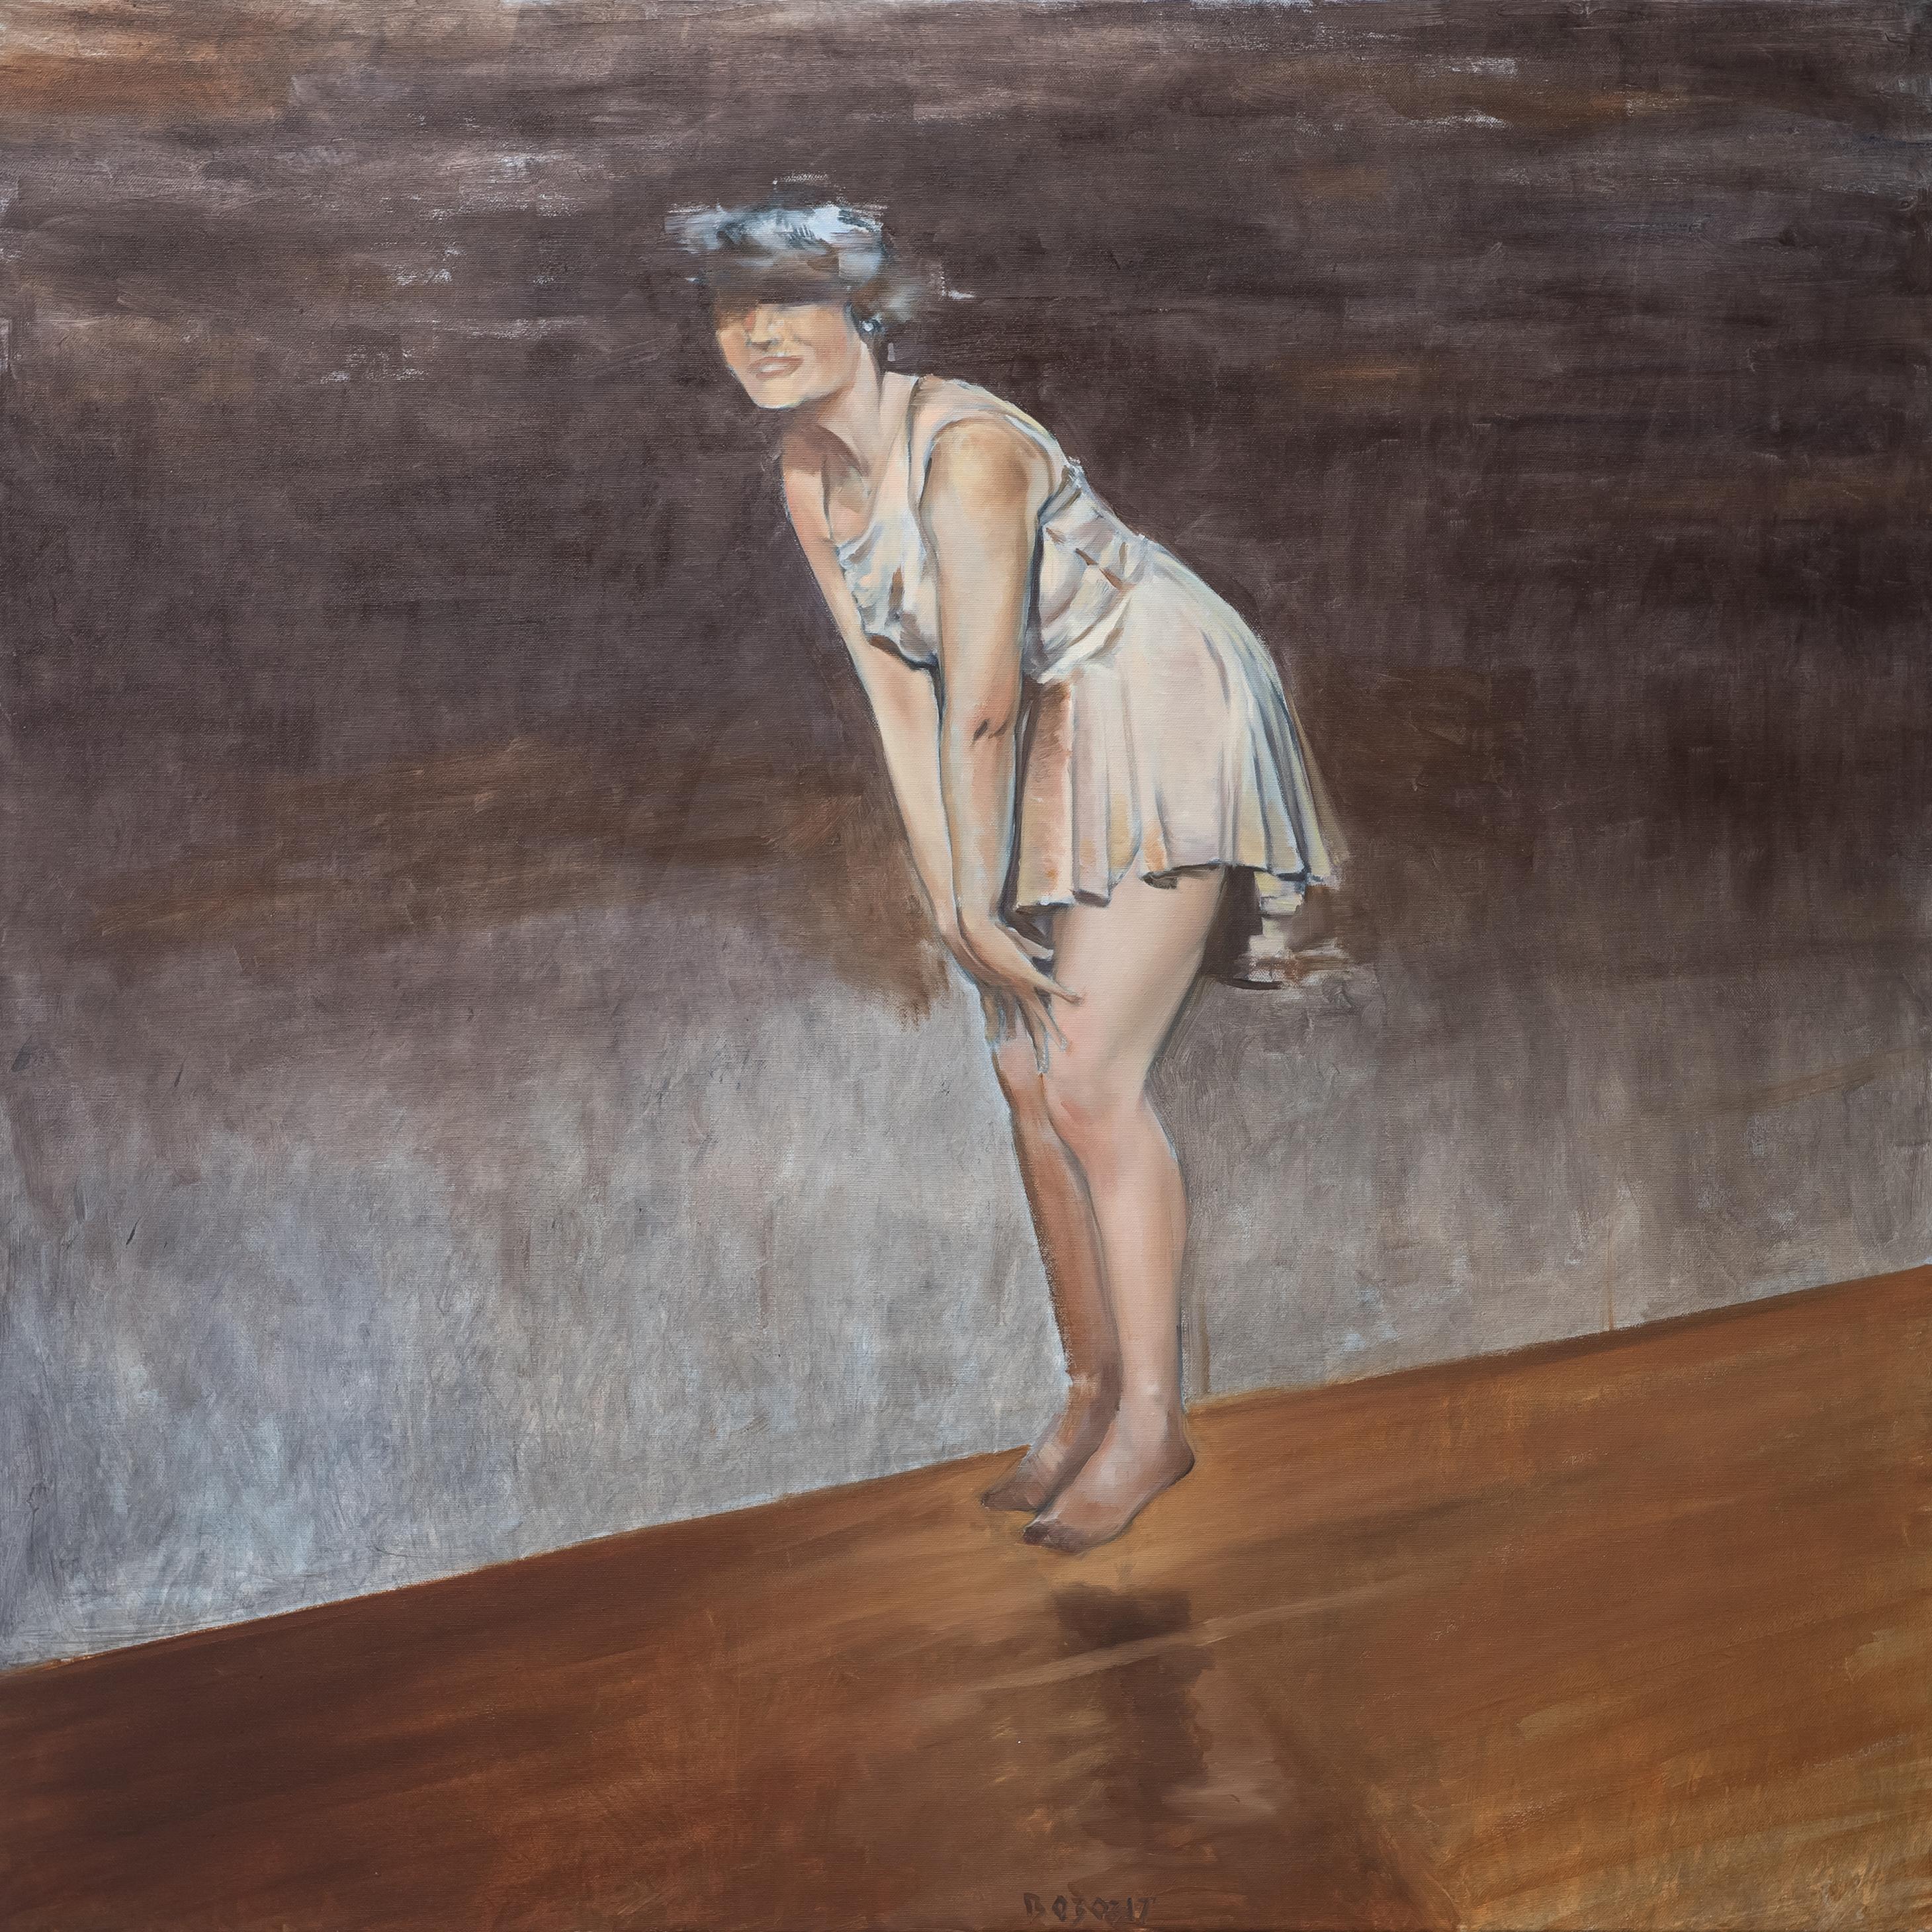 Portrait Painting Tomasz Bielak - Euphoria - Femme montante - Peinture à l'huile figurative contemporaine, portrait de femme